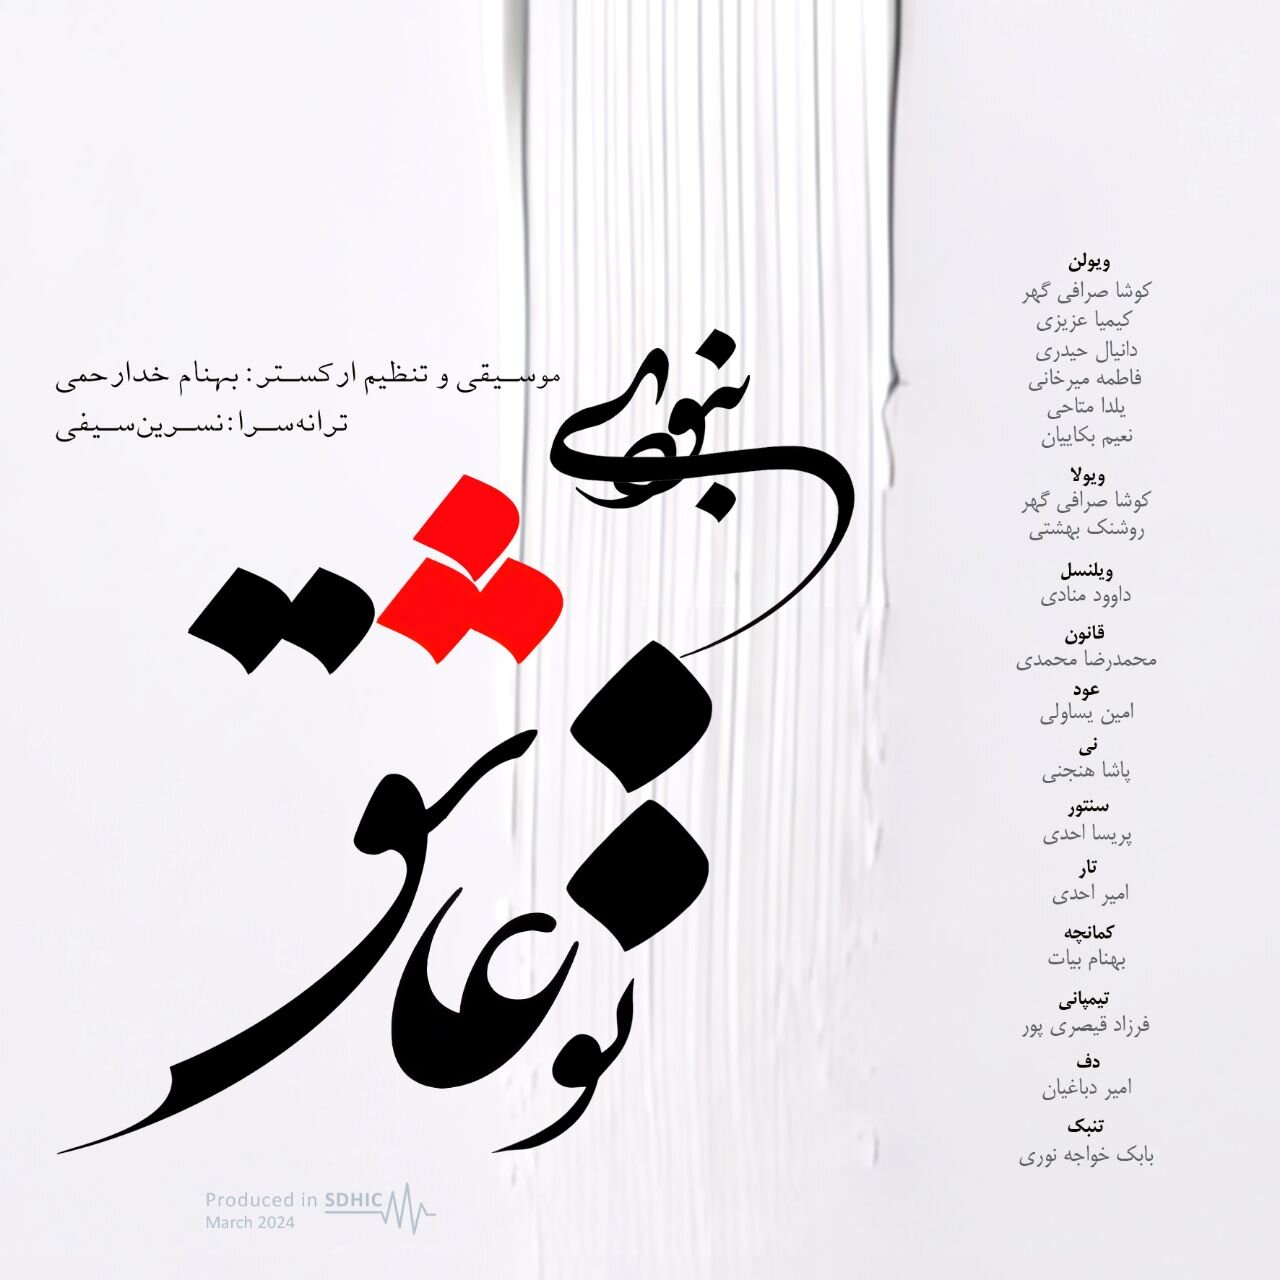 با تلفیق سازهای ایرانی و غربی؛ قطعه «تو عاشق نبودی» منتشر شد